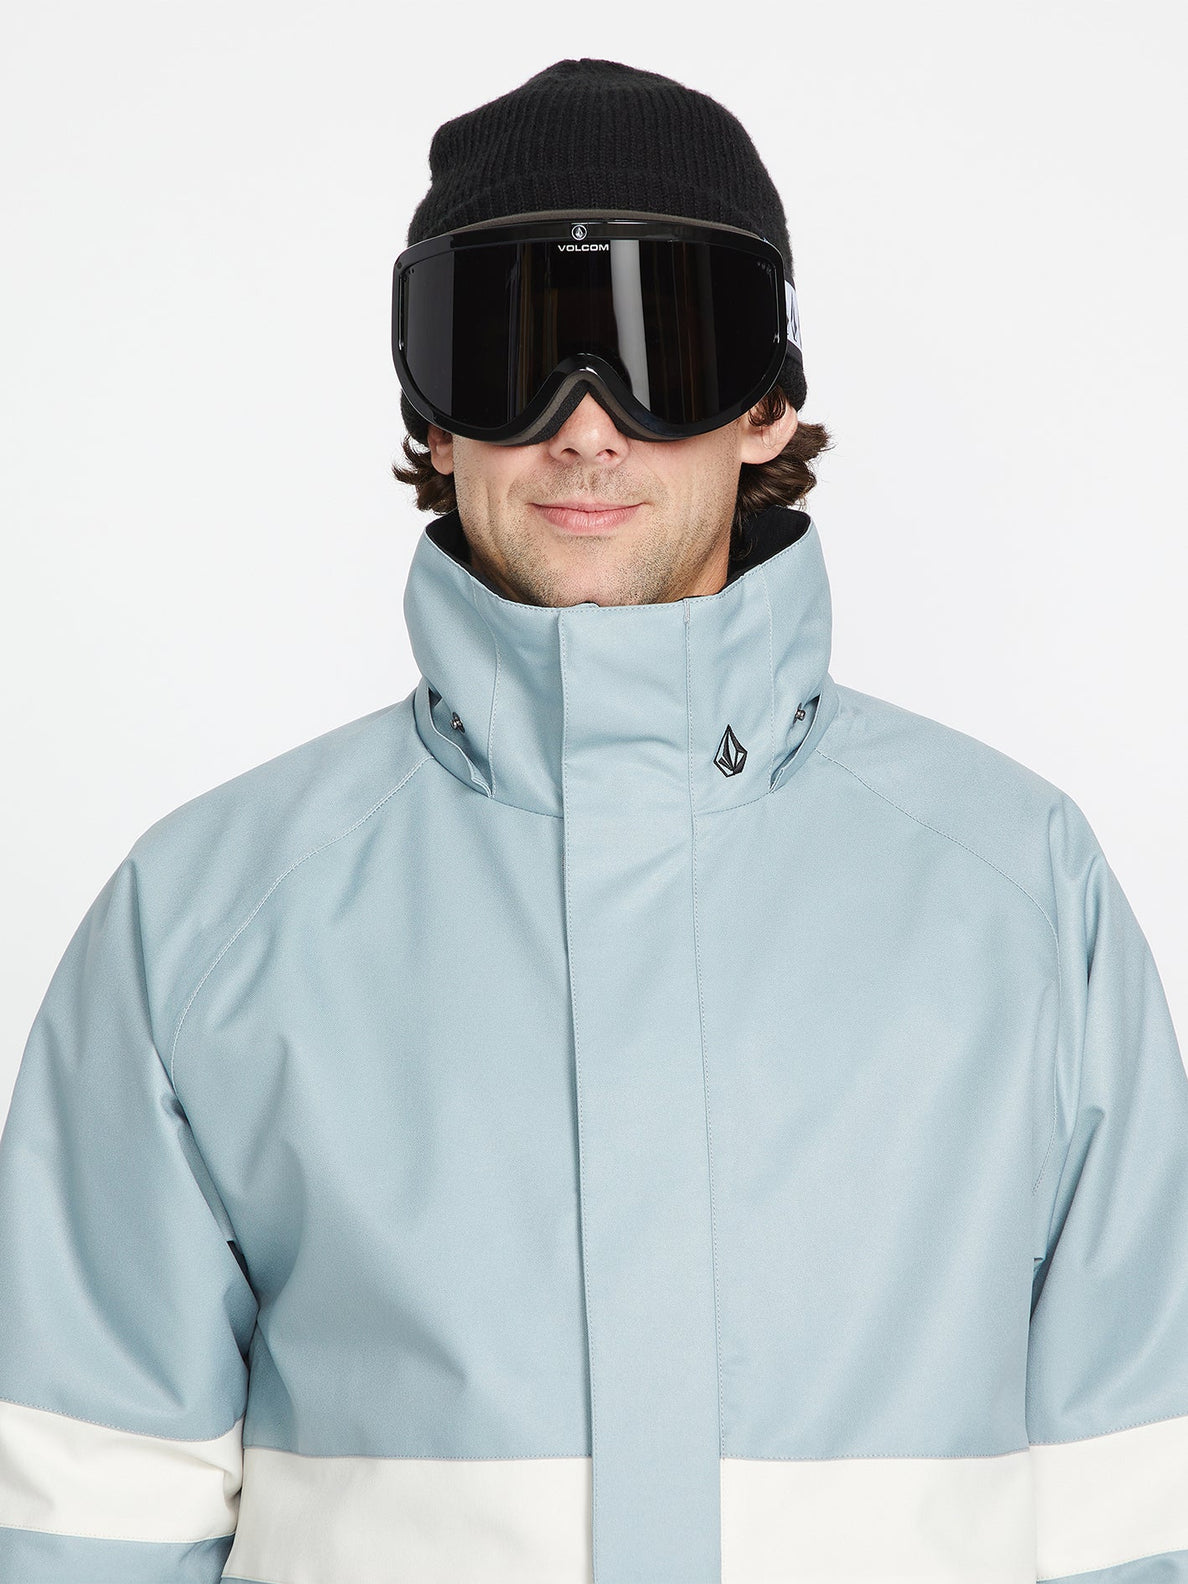 Volcom JP Insulated Jacket Snowboardjacke – Hellgrau | Meistverkaufte Produkte | Neue Produkte | Neueste Produkte | Sammlung_Zalando | Snowboard-Shop | Snowboardjacken Herren | Volcom-Shop | WINTER 24 | surfdevils.com